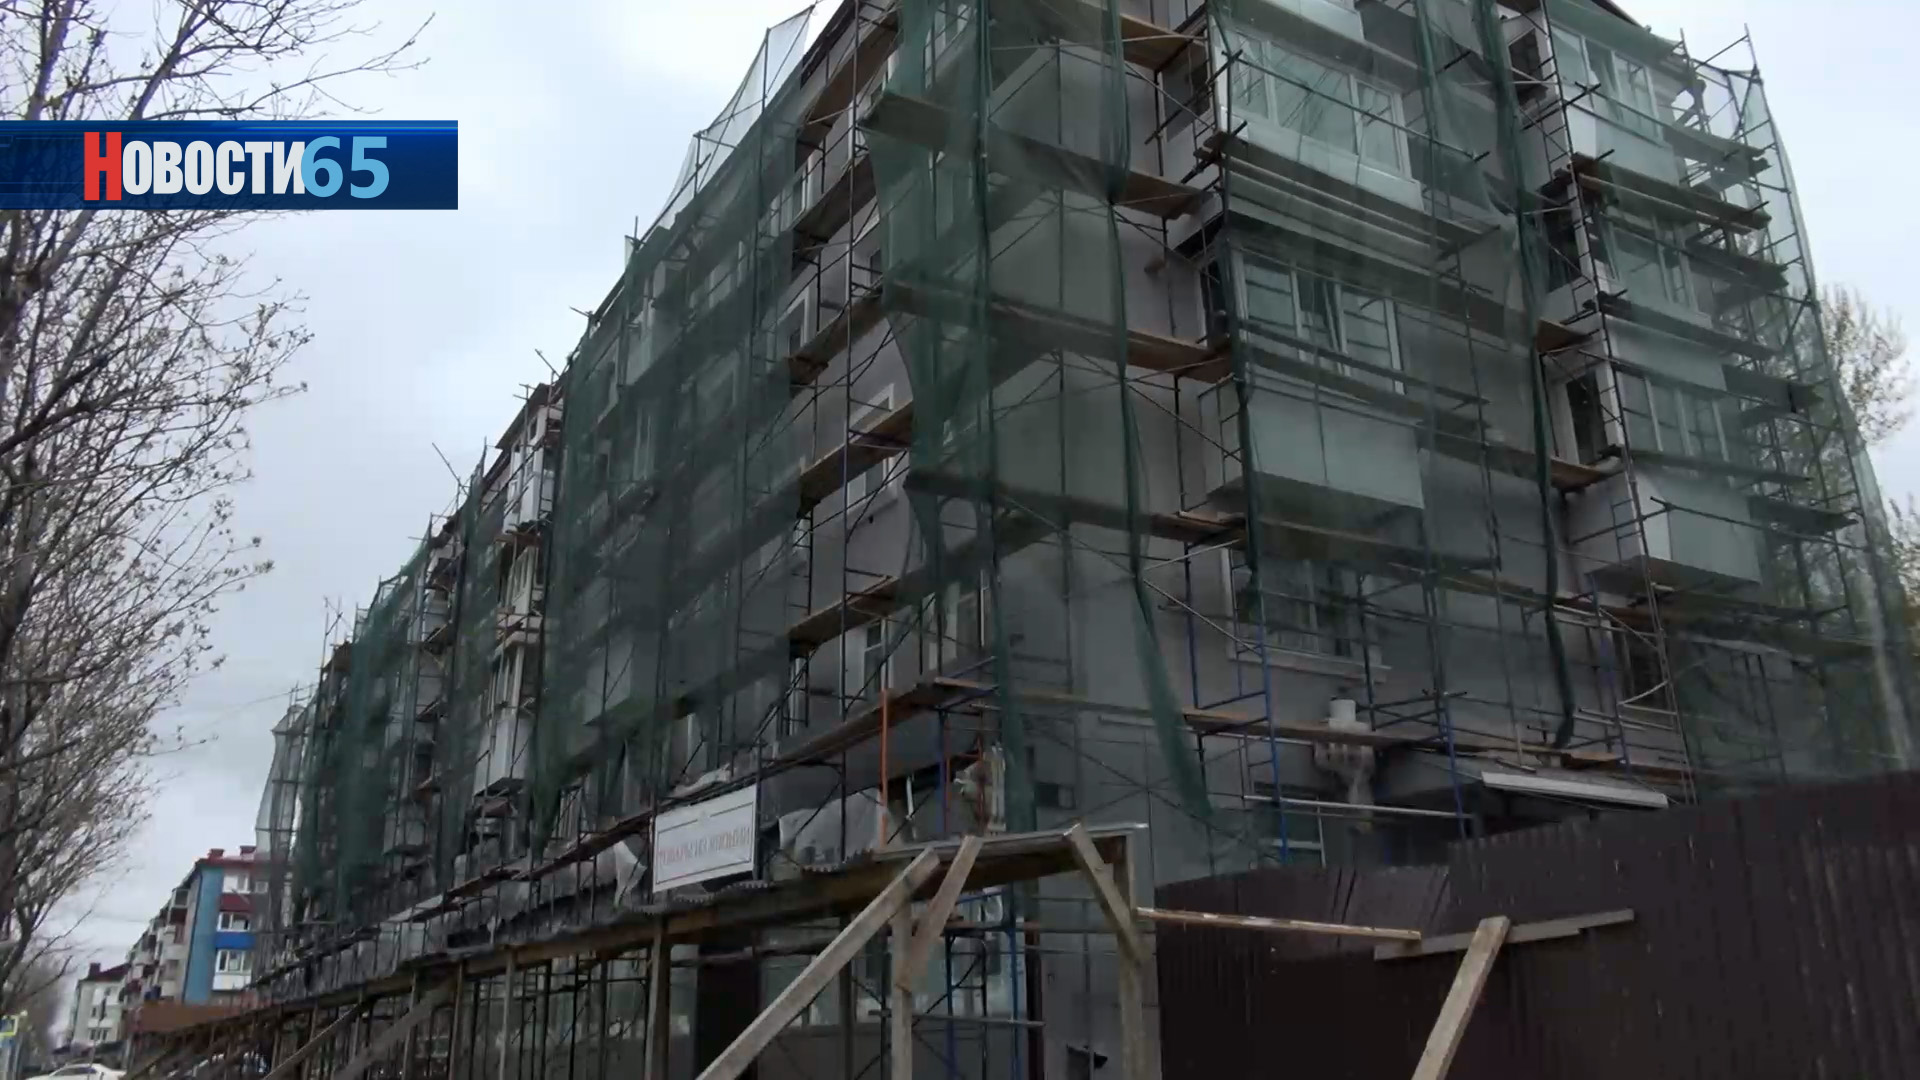 Фасады отремонтируют. 30 многоквартирных домов в Южно-Сахалинске обретут новый облик